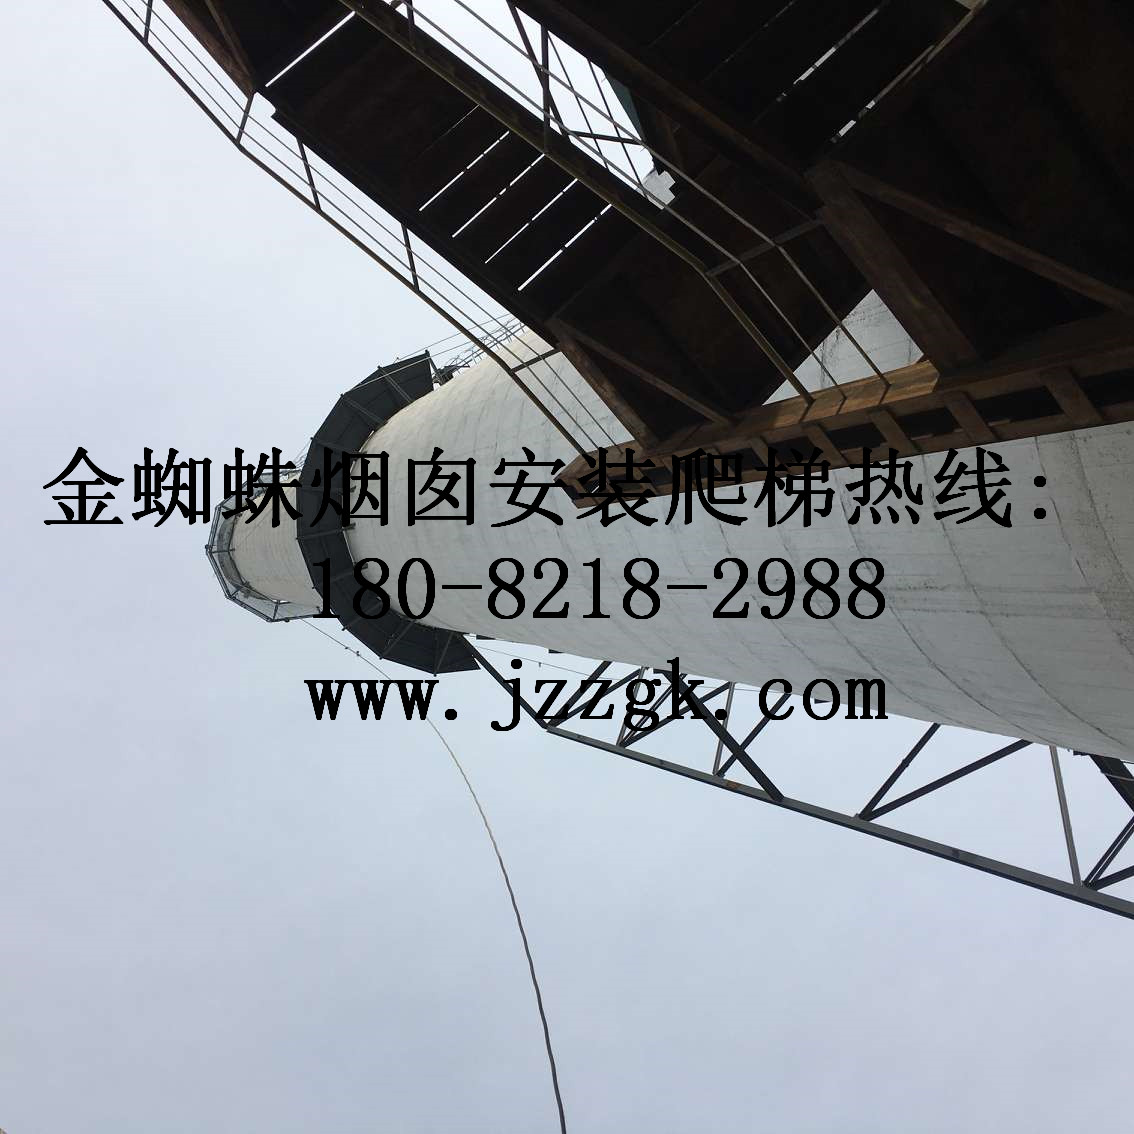 天津市烟囱安装爬梯施工单位